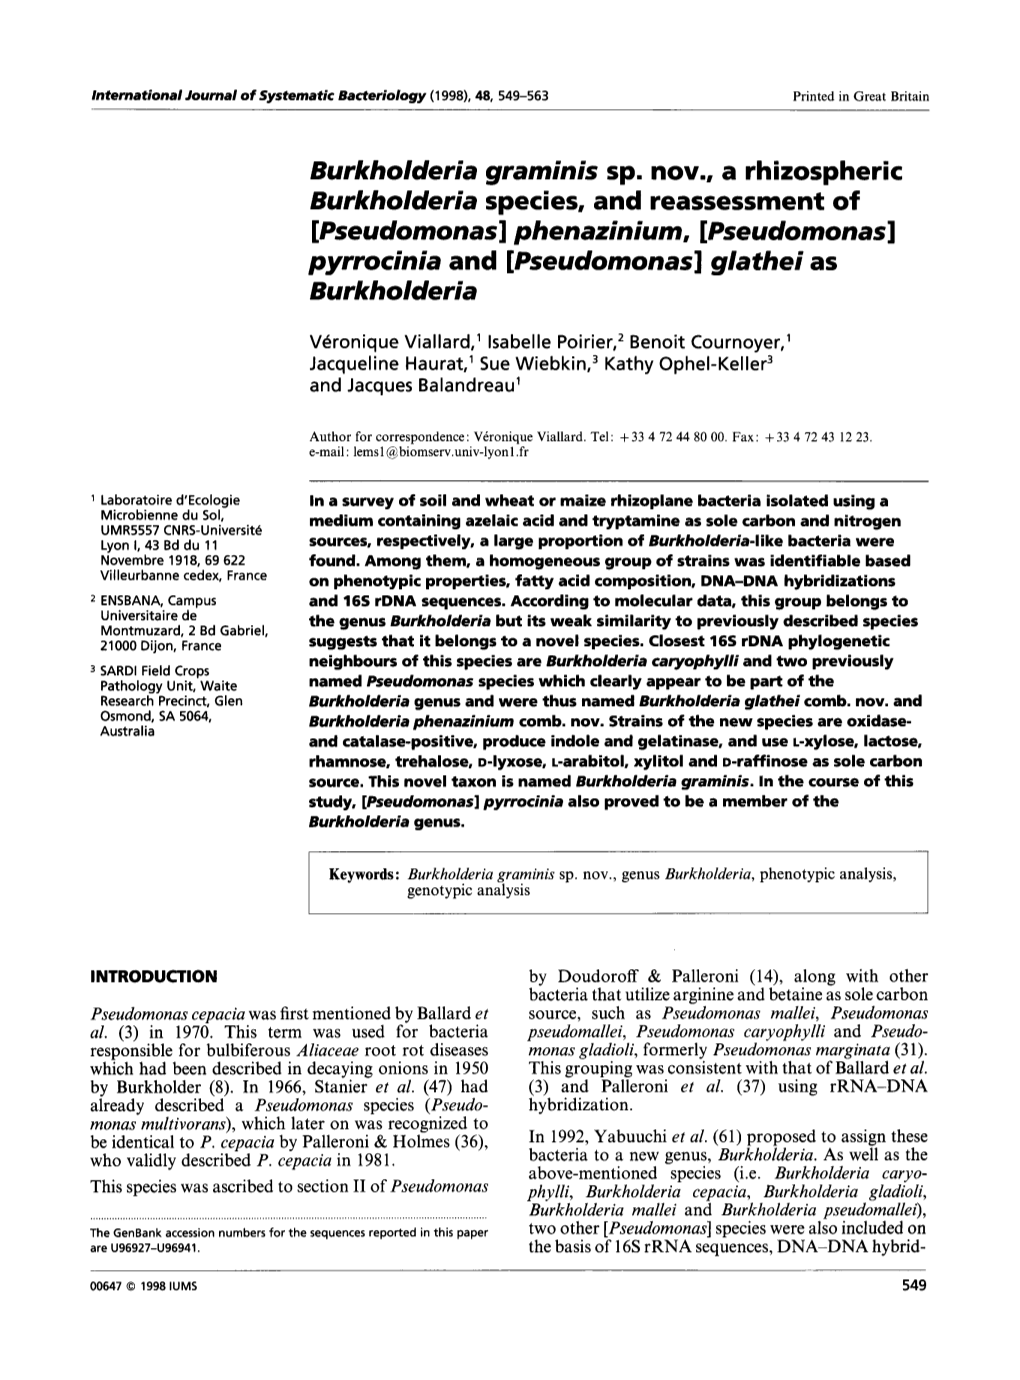 Pseudomonas]Phenazinium, [Pseudomonas] Pyrrocinia and [Pseudomonas] Glathei As Burkholderia